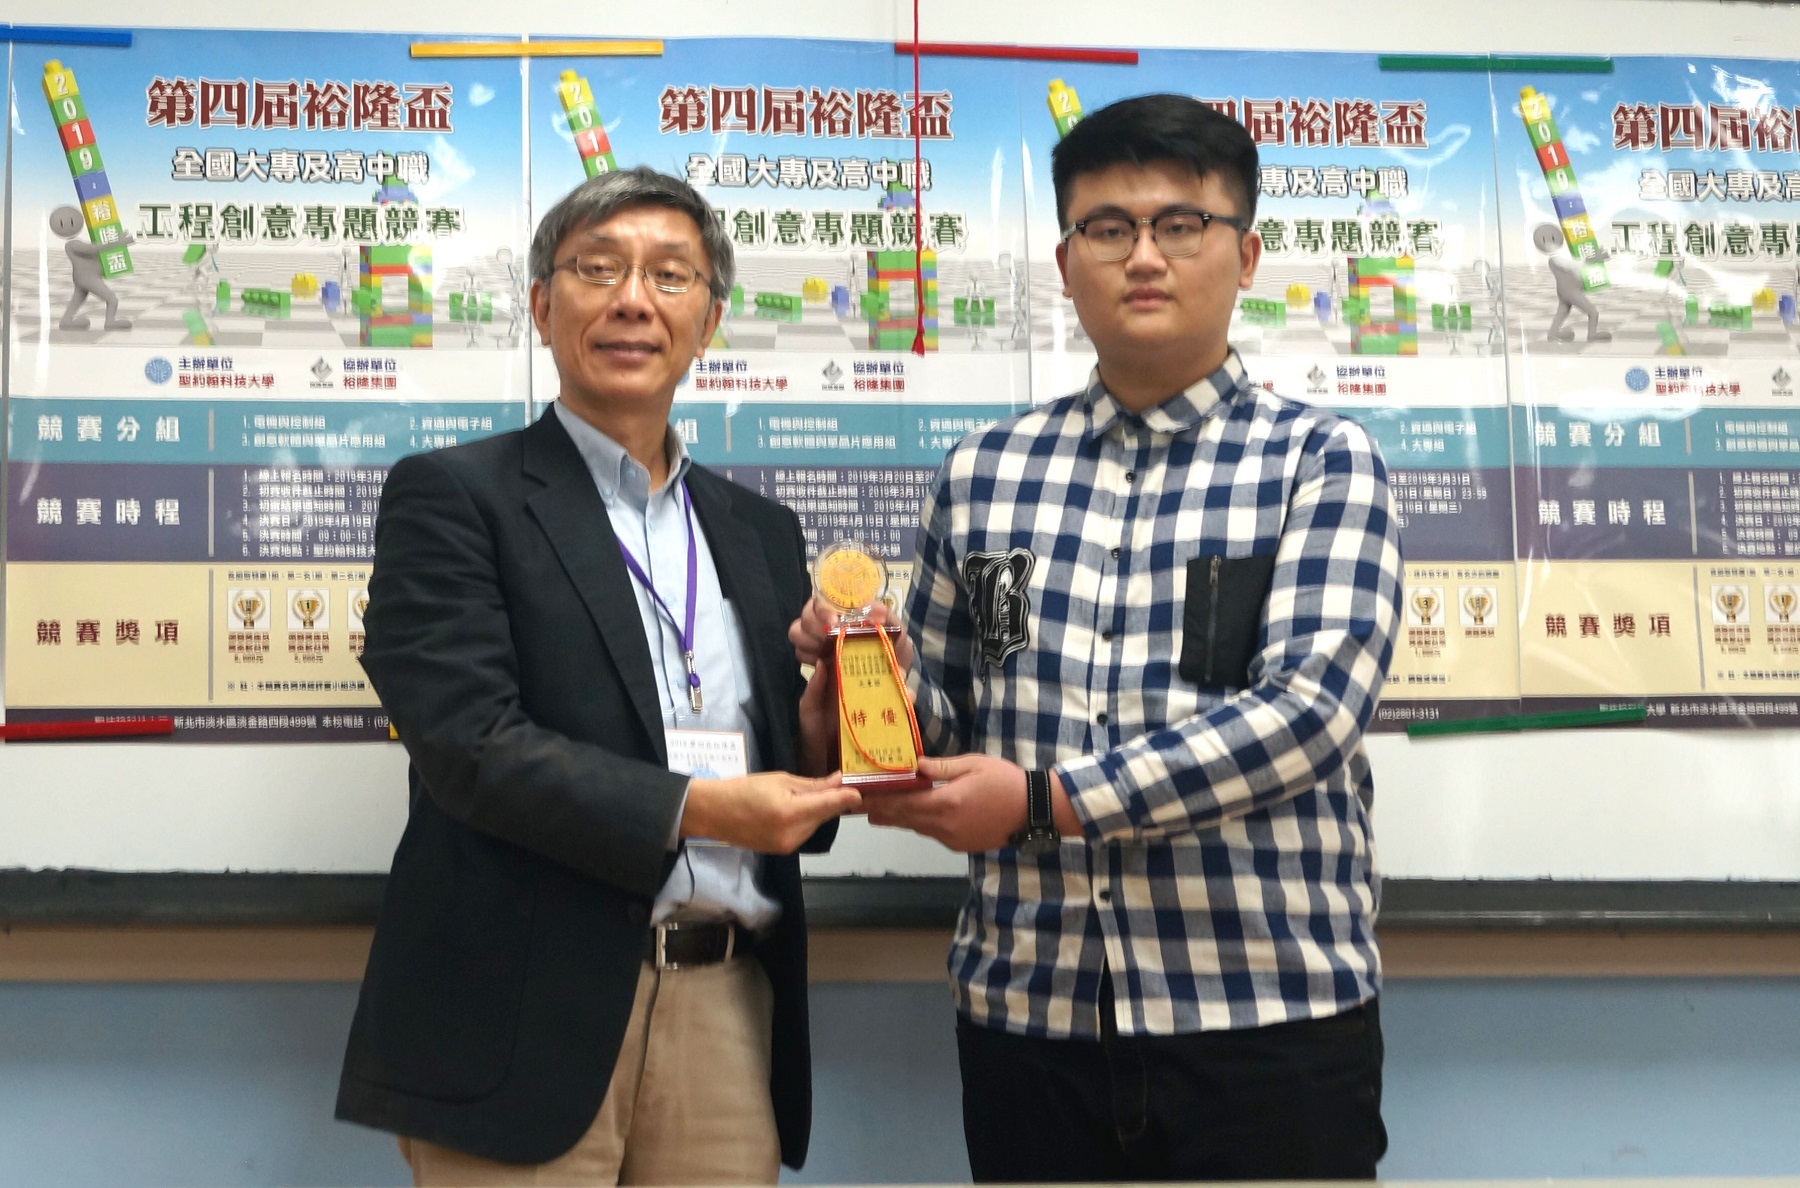 聖約翰科大電機系獲得「大專組」特優獎，由台北科技大學電機系張陽郎主任（左）頒獎